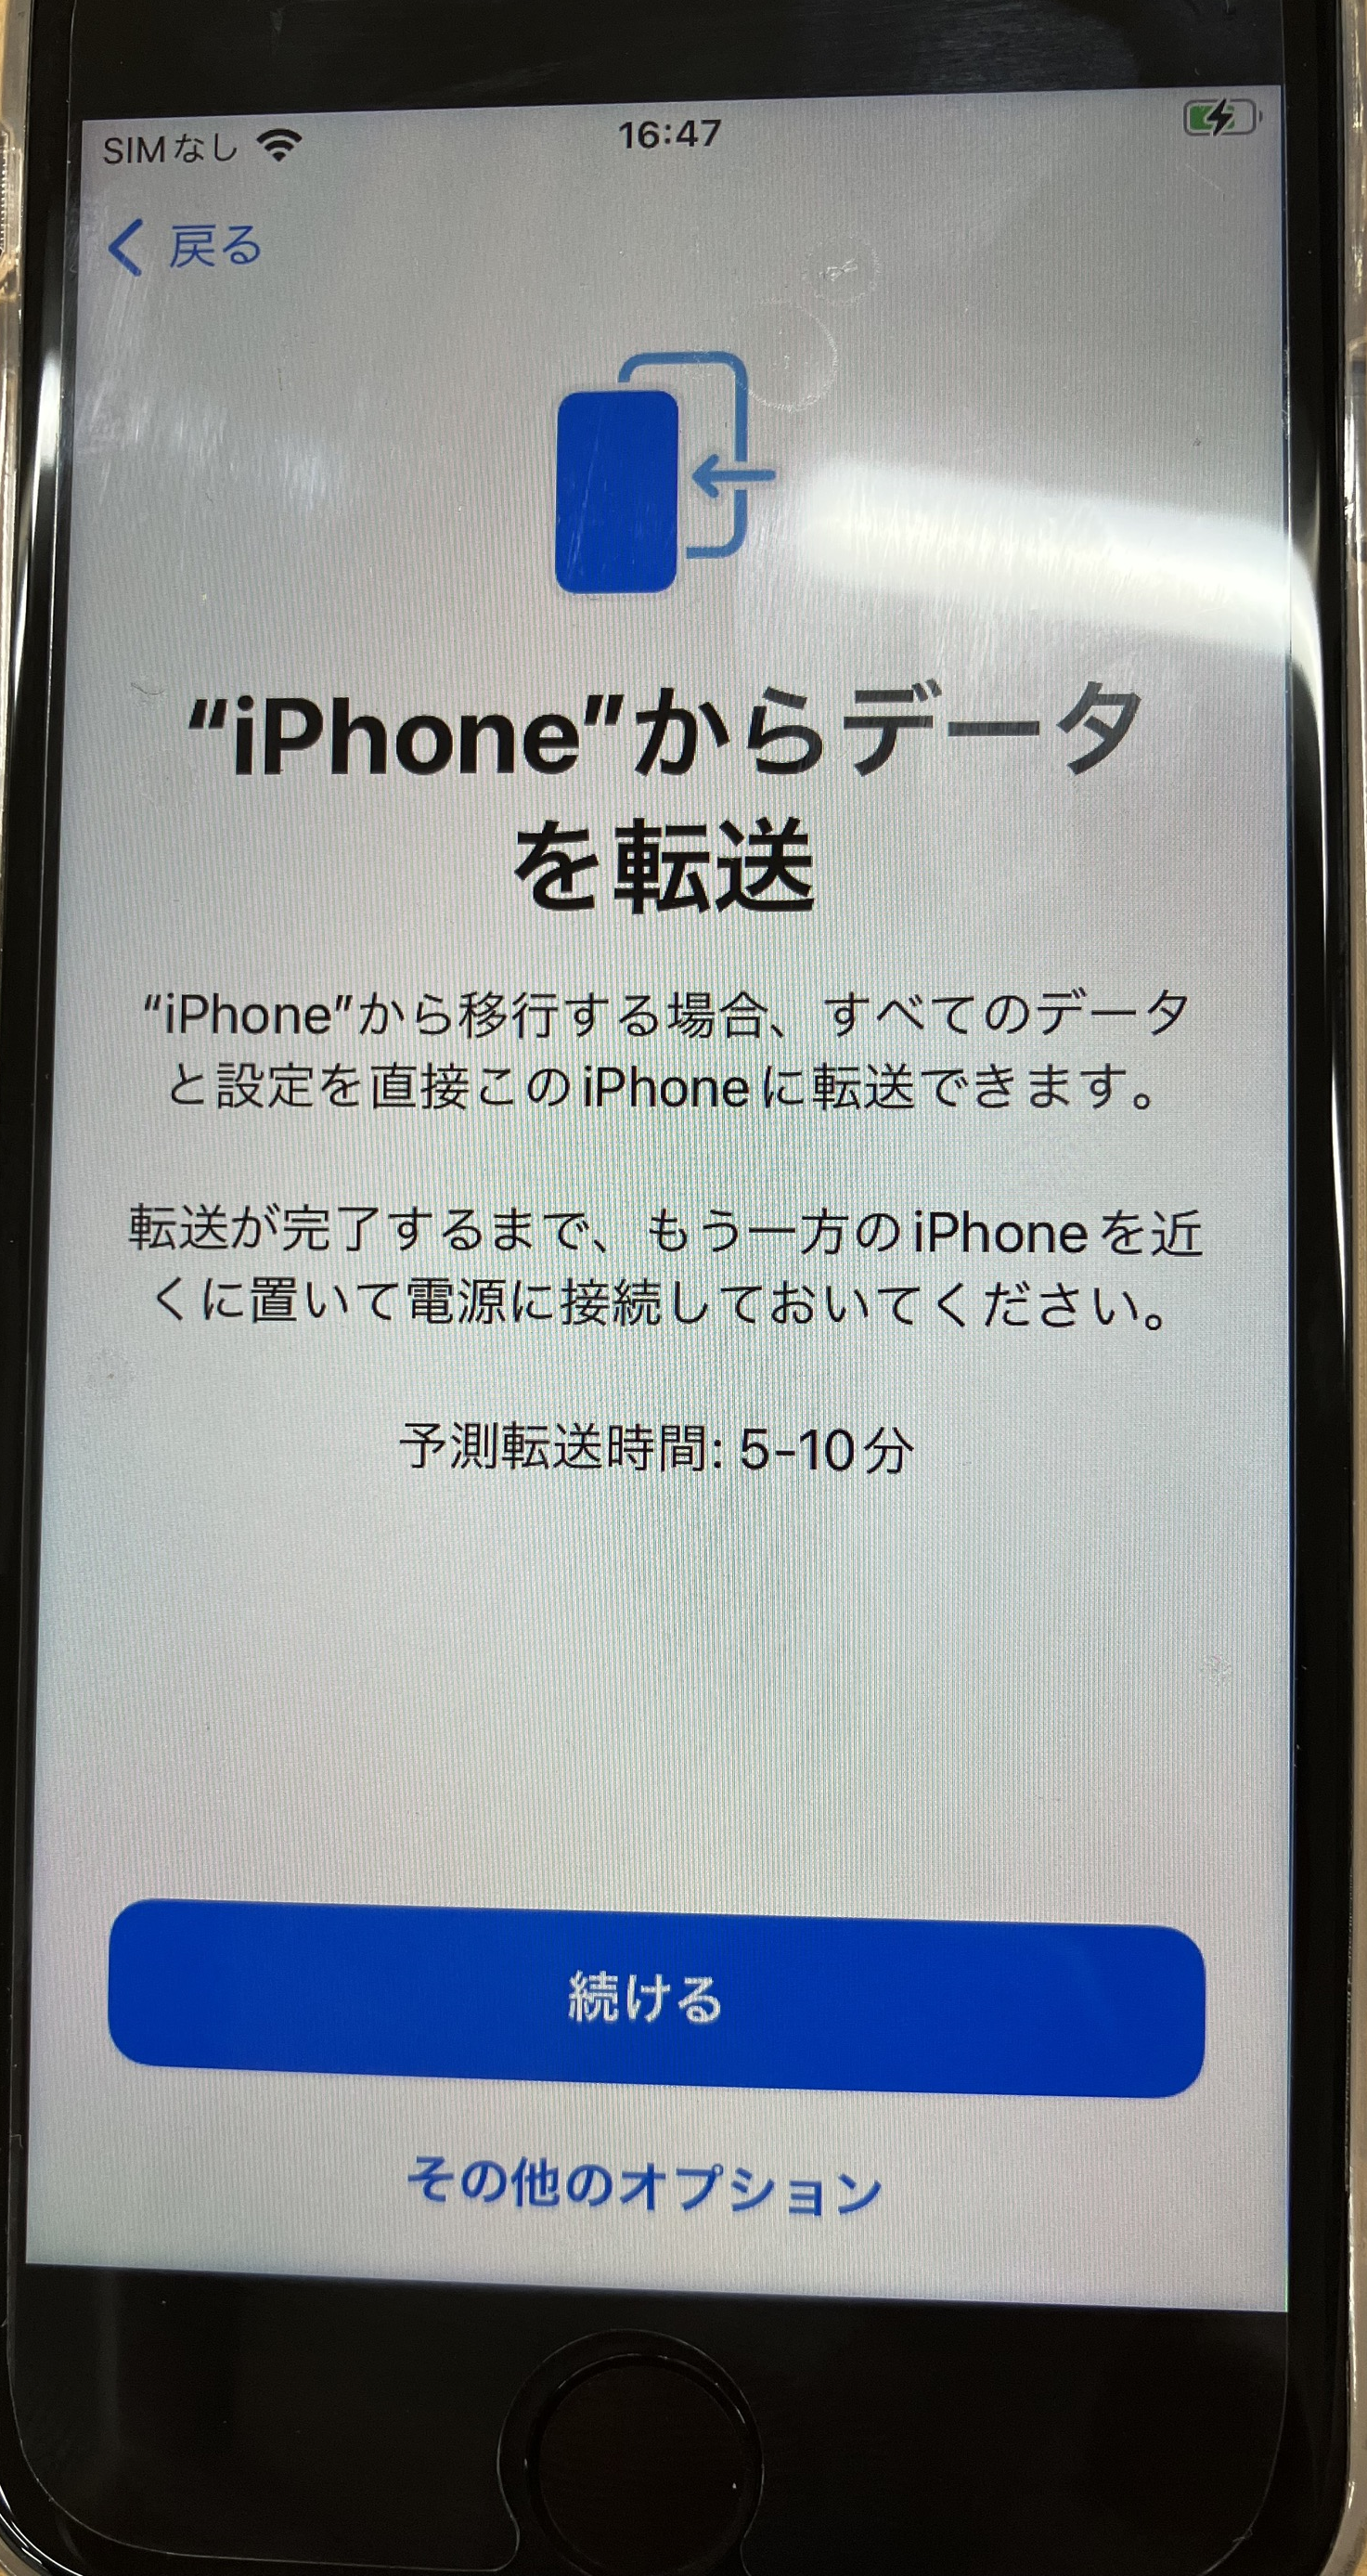 iPhone:「iPhoneからデータを転送」画面では「続ける」をタップ